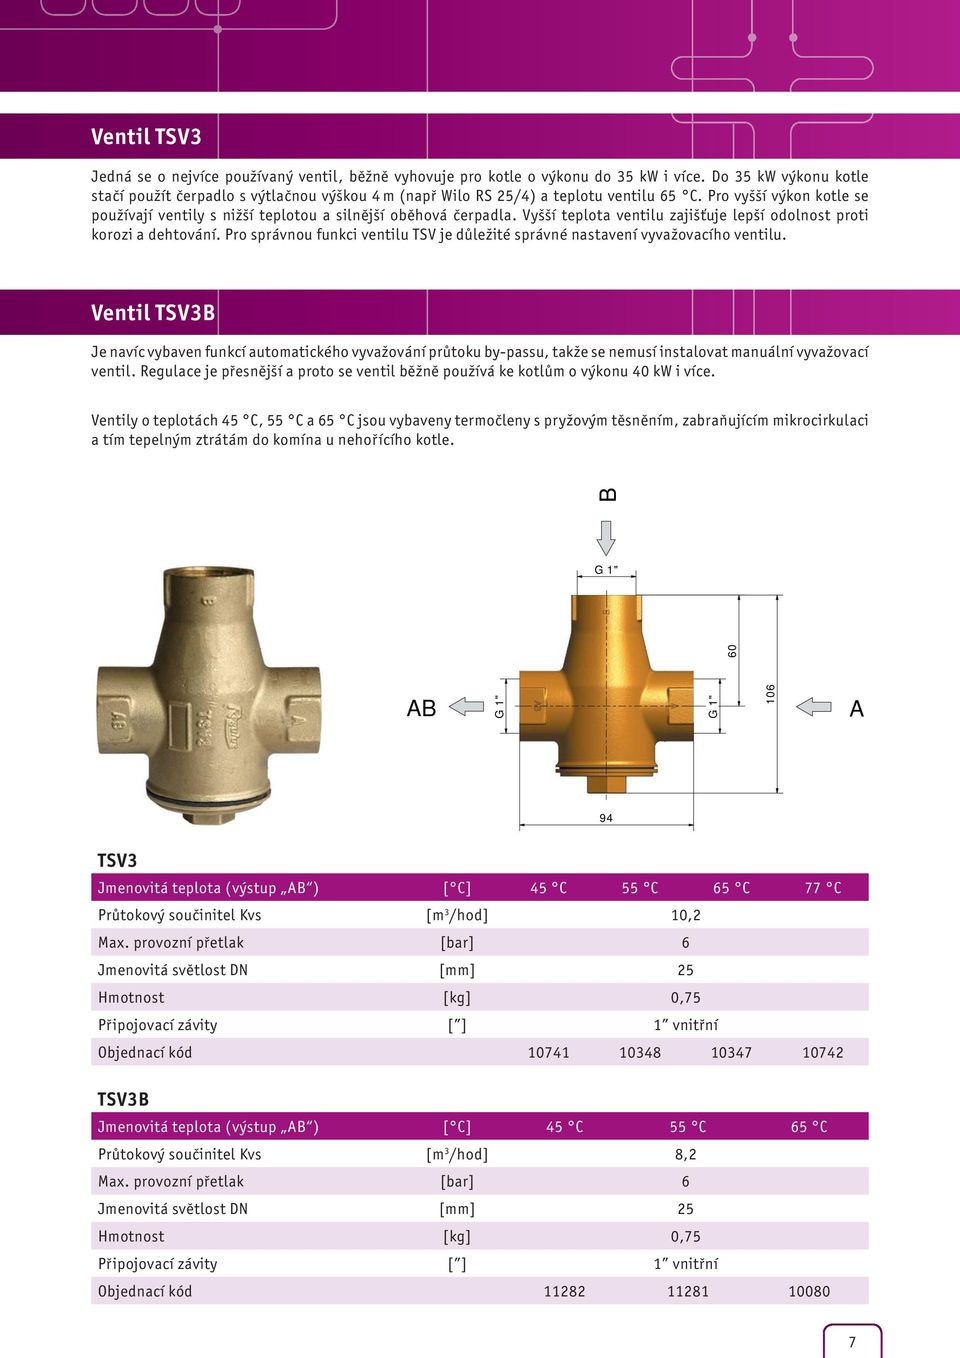 Vyšší teplota ventilu zajišťuje lepší odolnost proti korozi a dehtování. Pro správnou funkci ventilu TSV je důležité správné nastavení vyvažovacího ventilu.